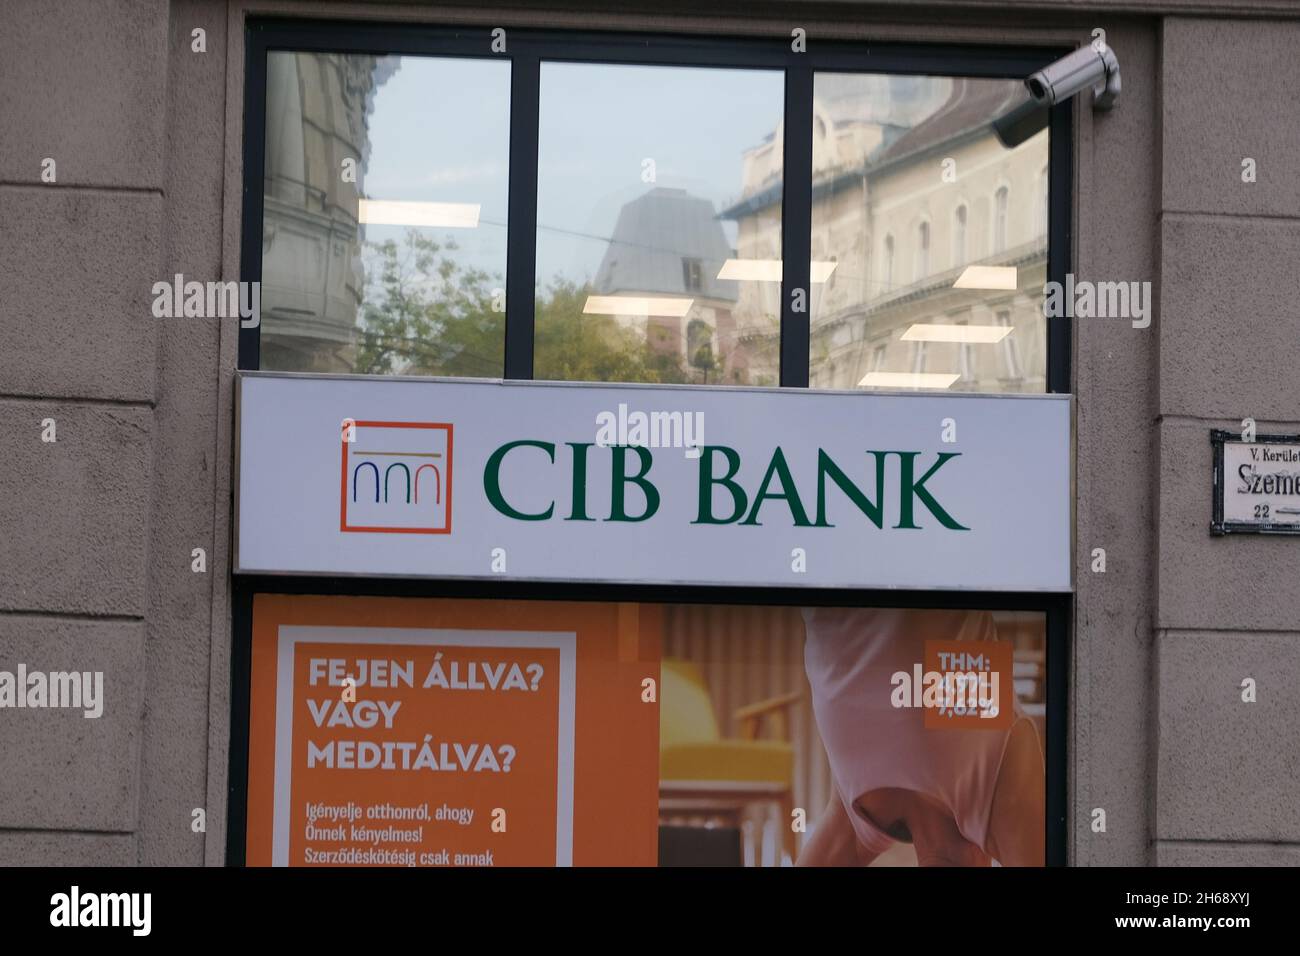 Budapest, Hungría - 1 de noviembre de 2021: Cartel del Banco CIB, editorial ilustrativa. Foto de stock